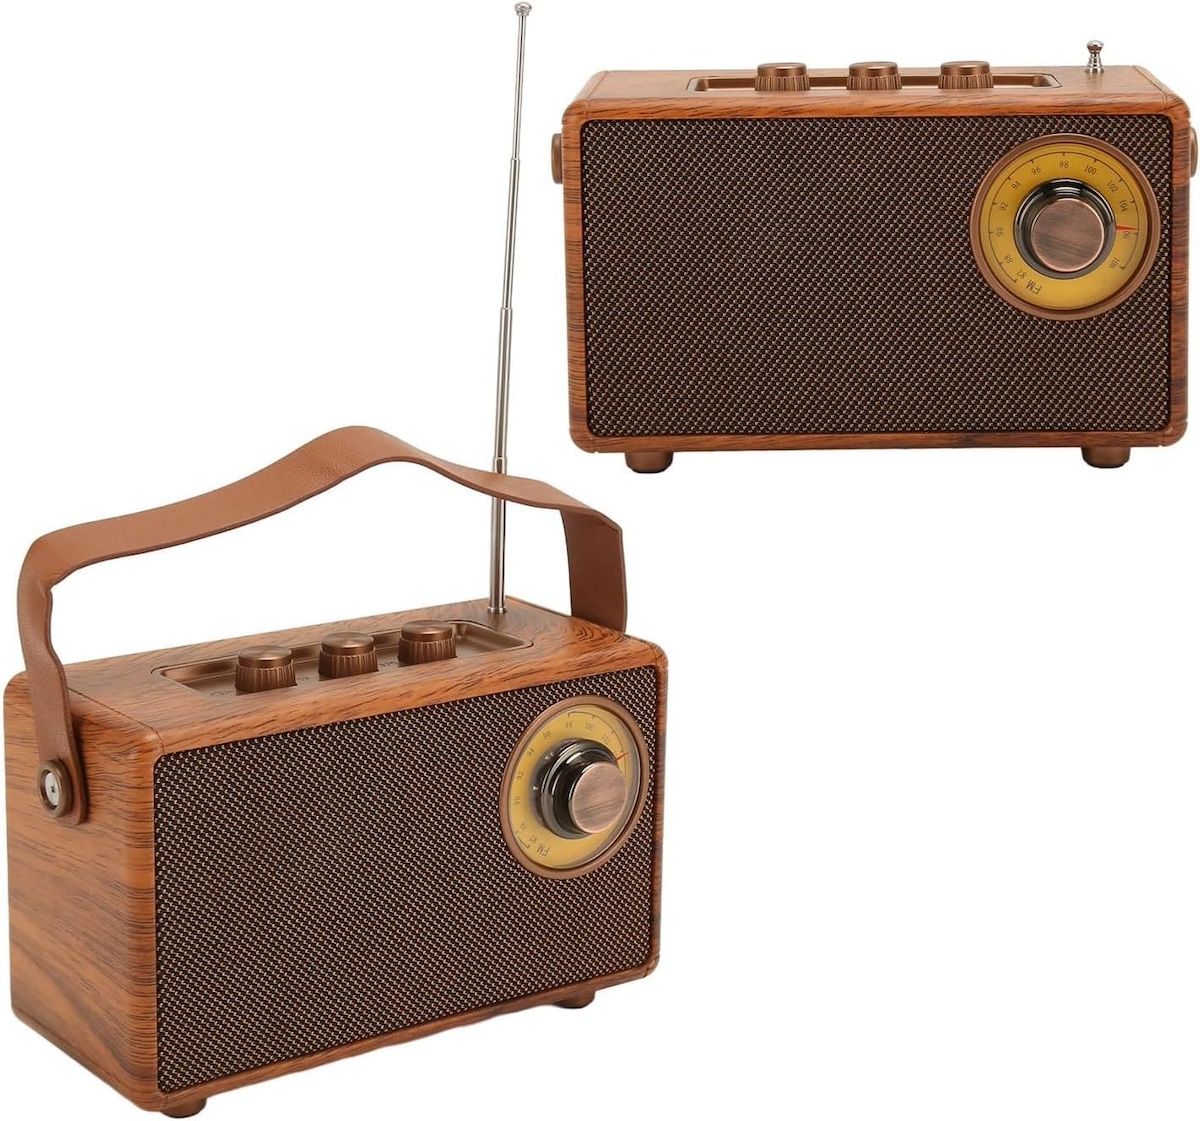 міні-радіо невеликий ретро старовинний дерев'яний стиль